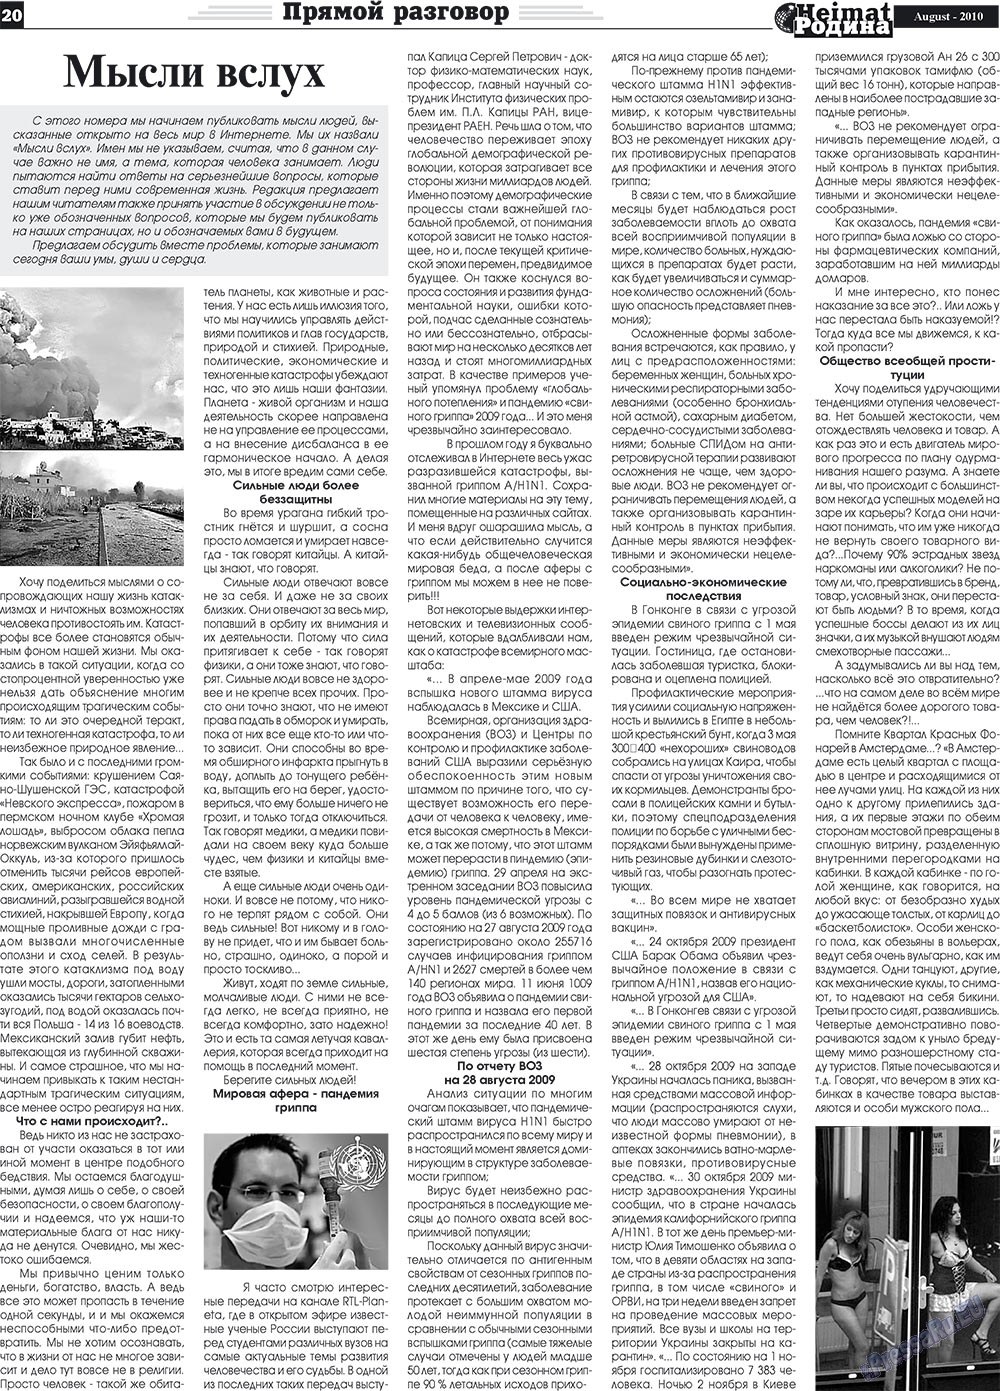 Heimat-Родина (газета). 2010 год, номер 8, стр. 20